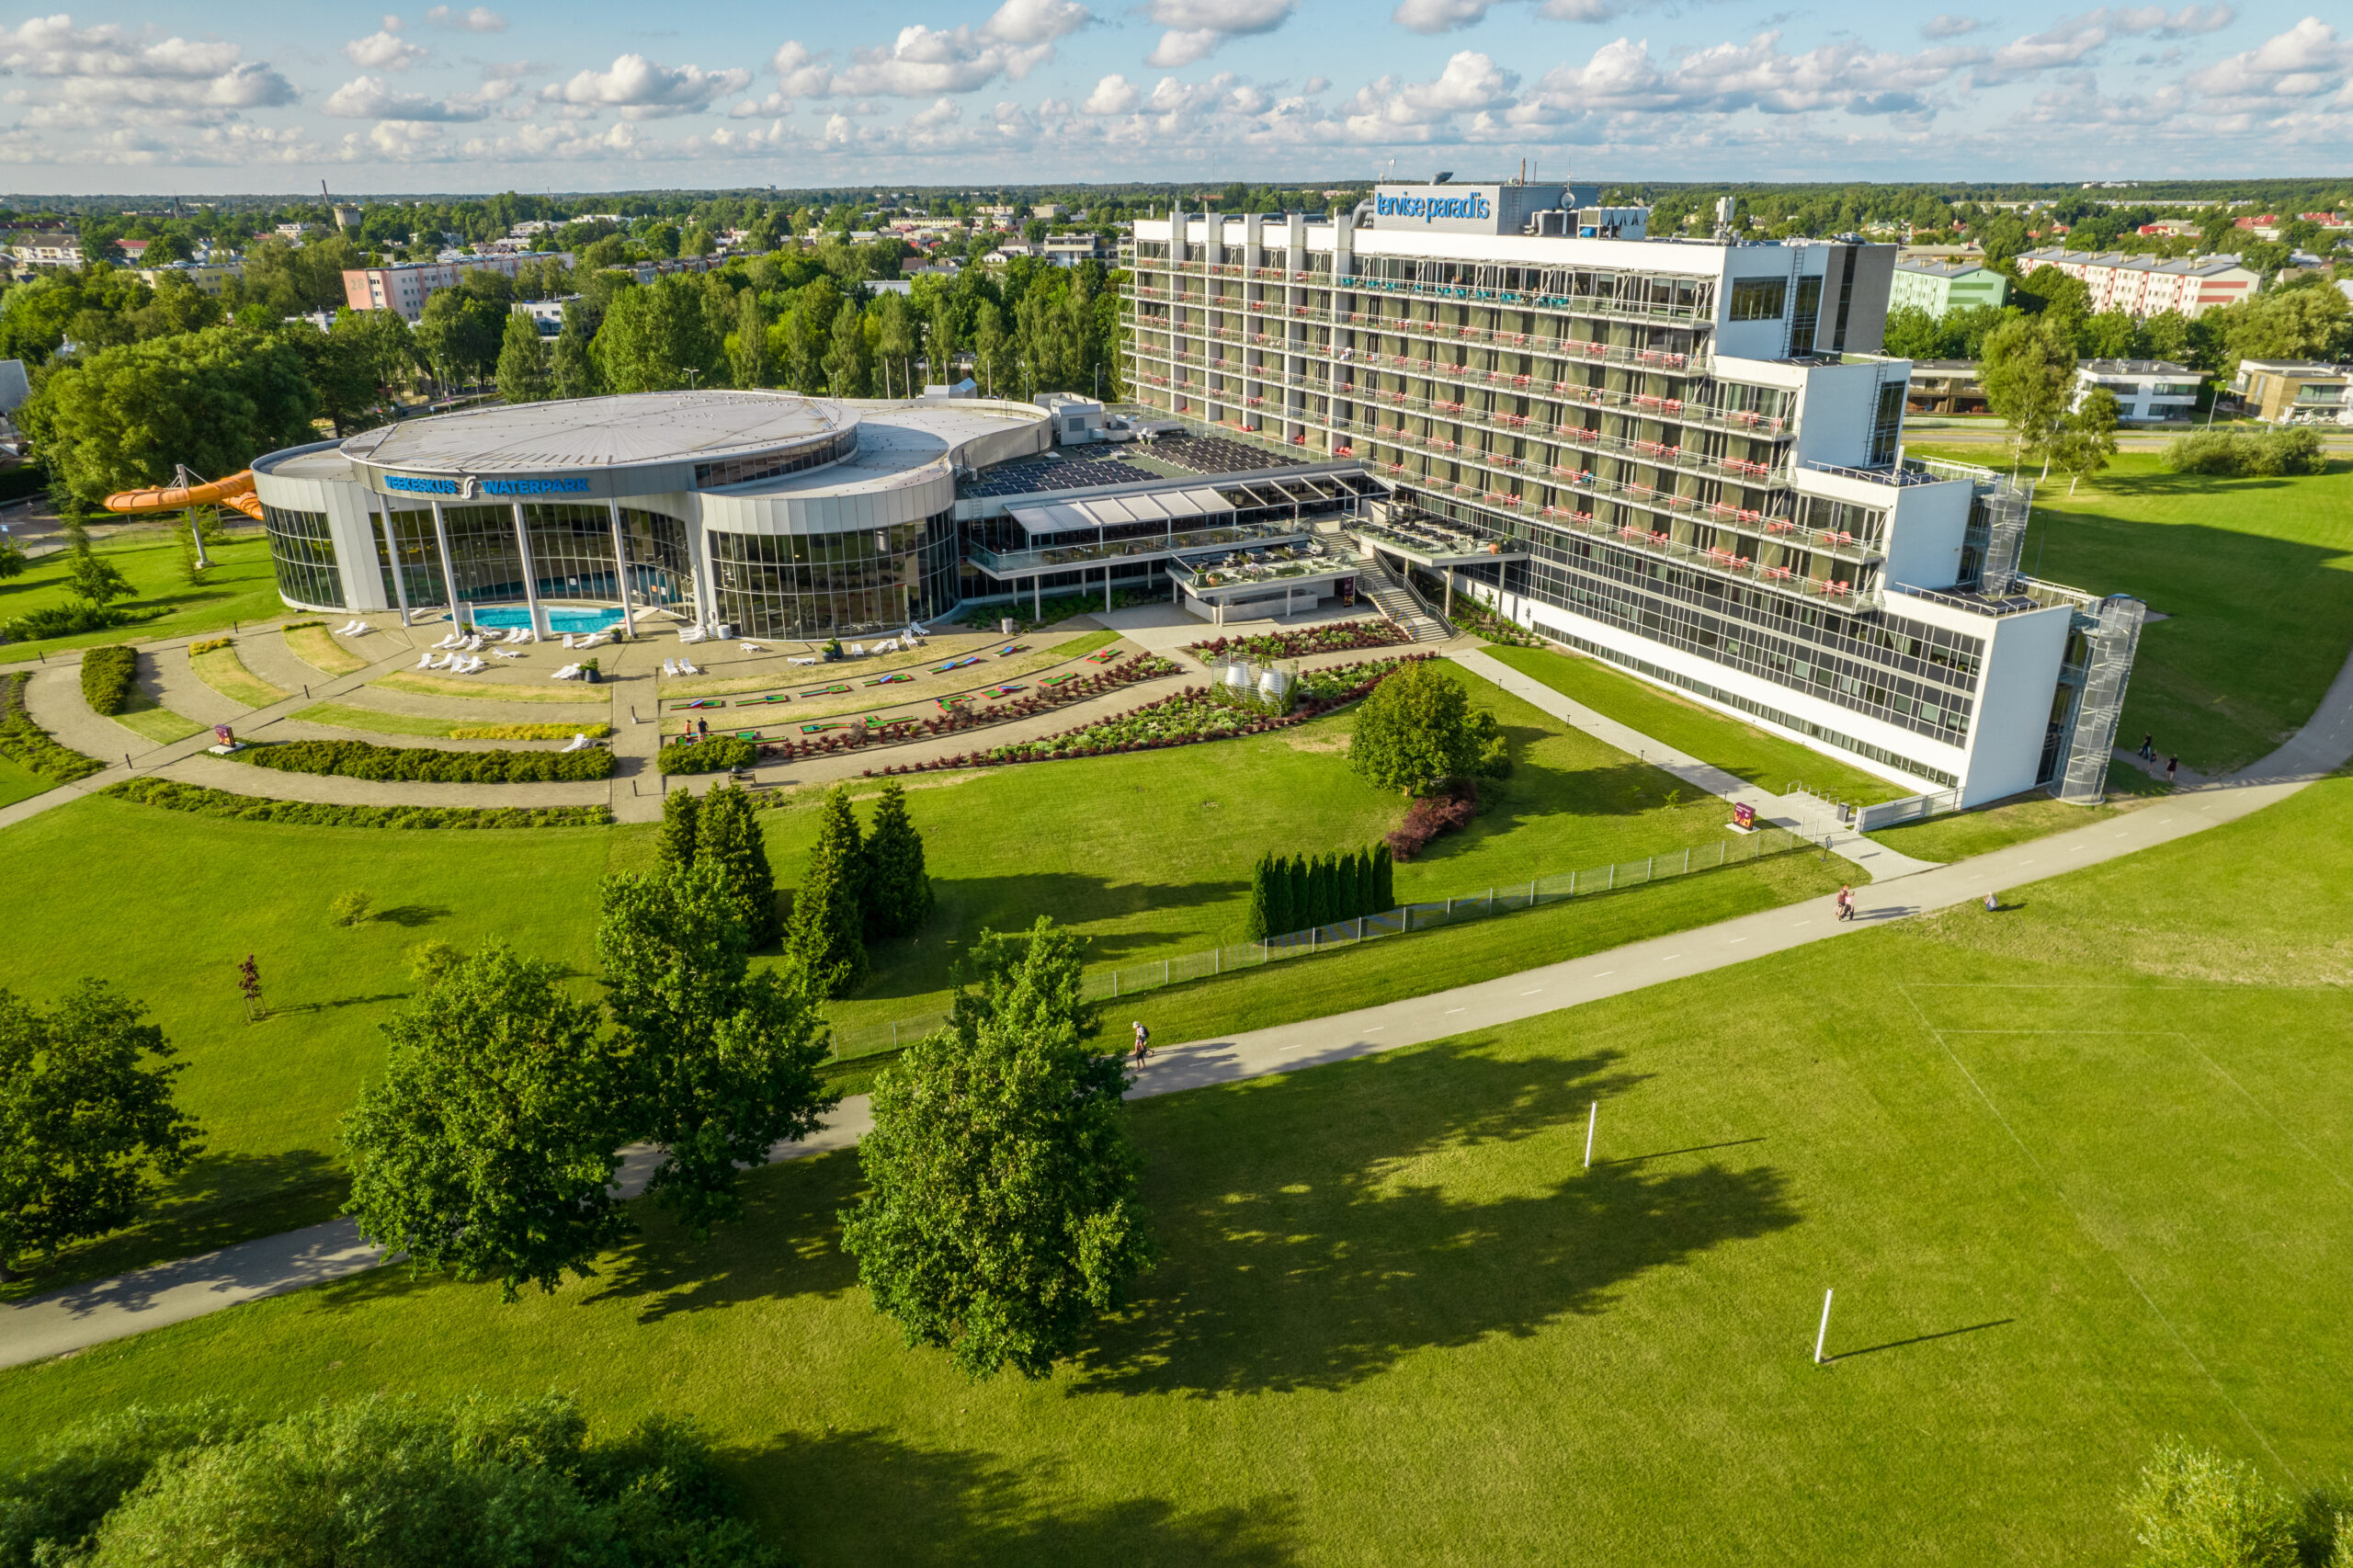 Parima lõõgastava puhkuse veetmiseks ootab Teid Pärnu mererannal asuv 4-tärni hotell.